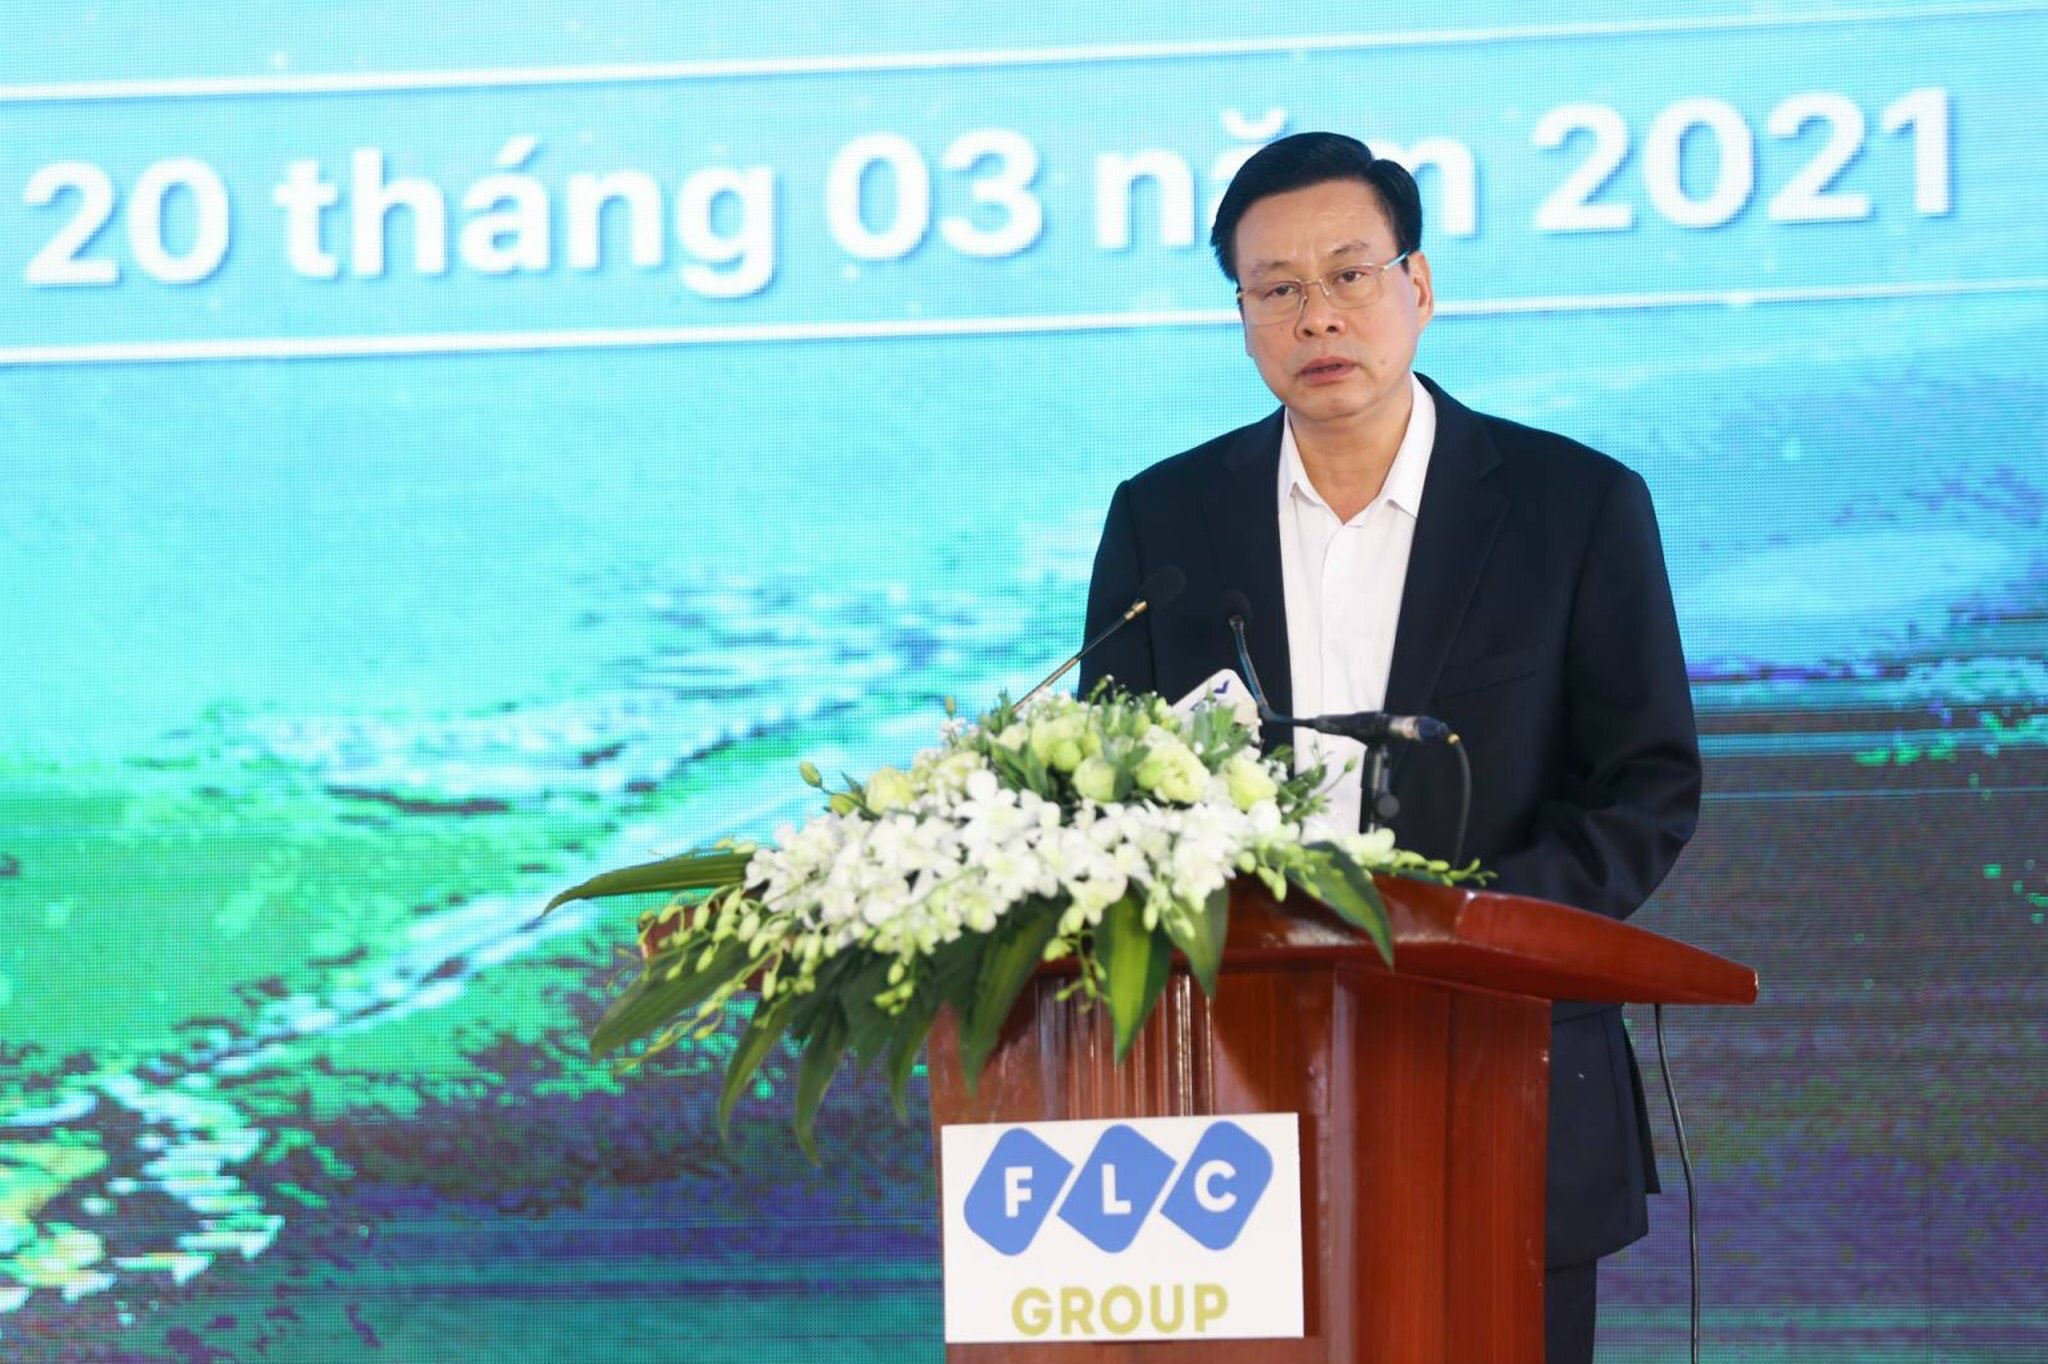 Ông Nguyễn Văn Sơn, Phó bí thư Tỉnh ủy, Chủ tịch Ủy ban Nhân dân tỉnh Hà Giang